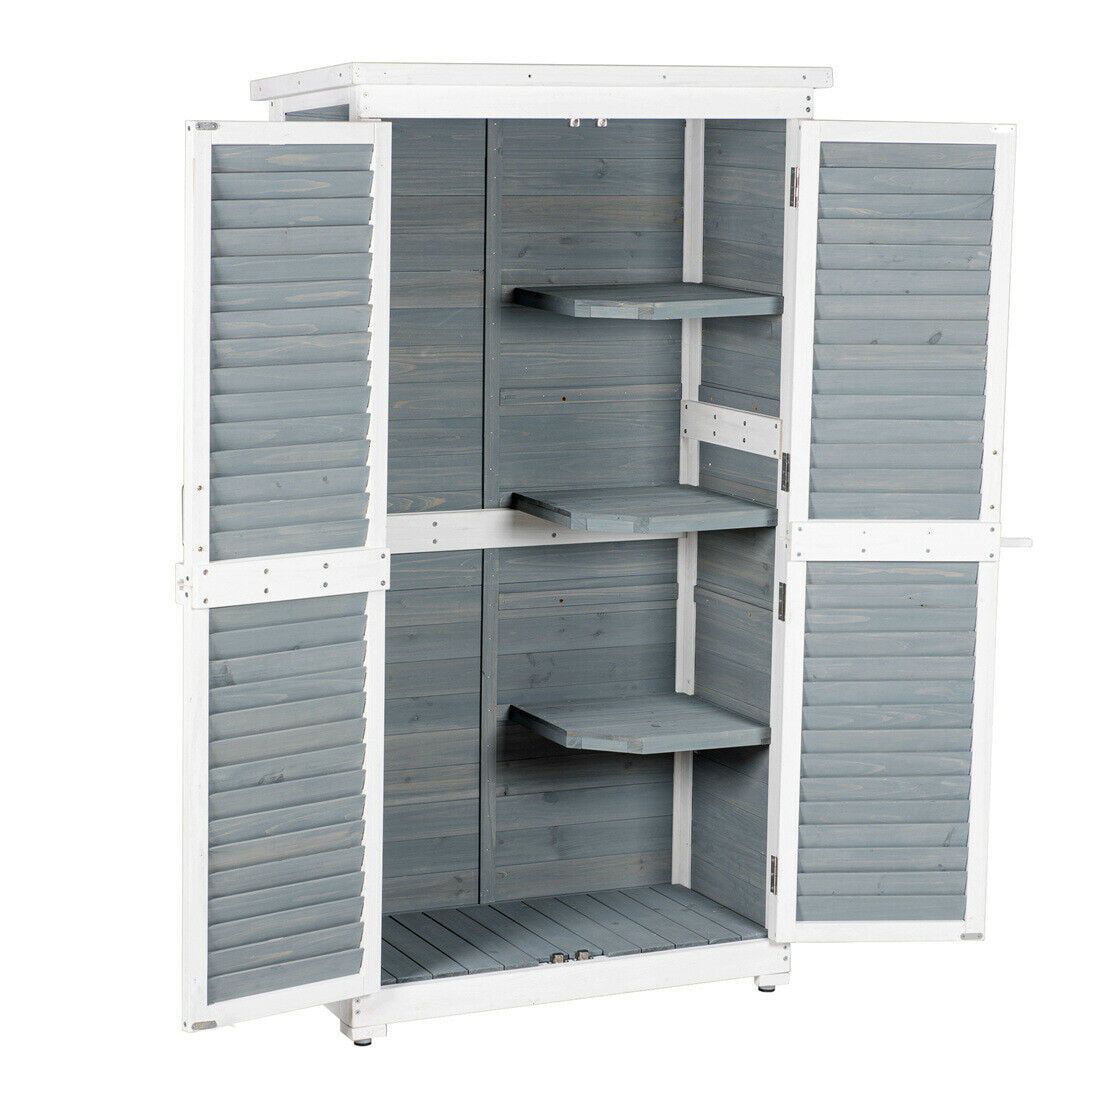 Outdoor Garden Wooden Storage, Outdoor Storage Cabinet With Shelves Waterproof